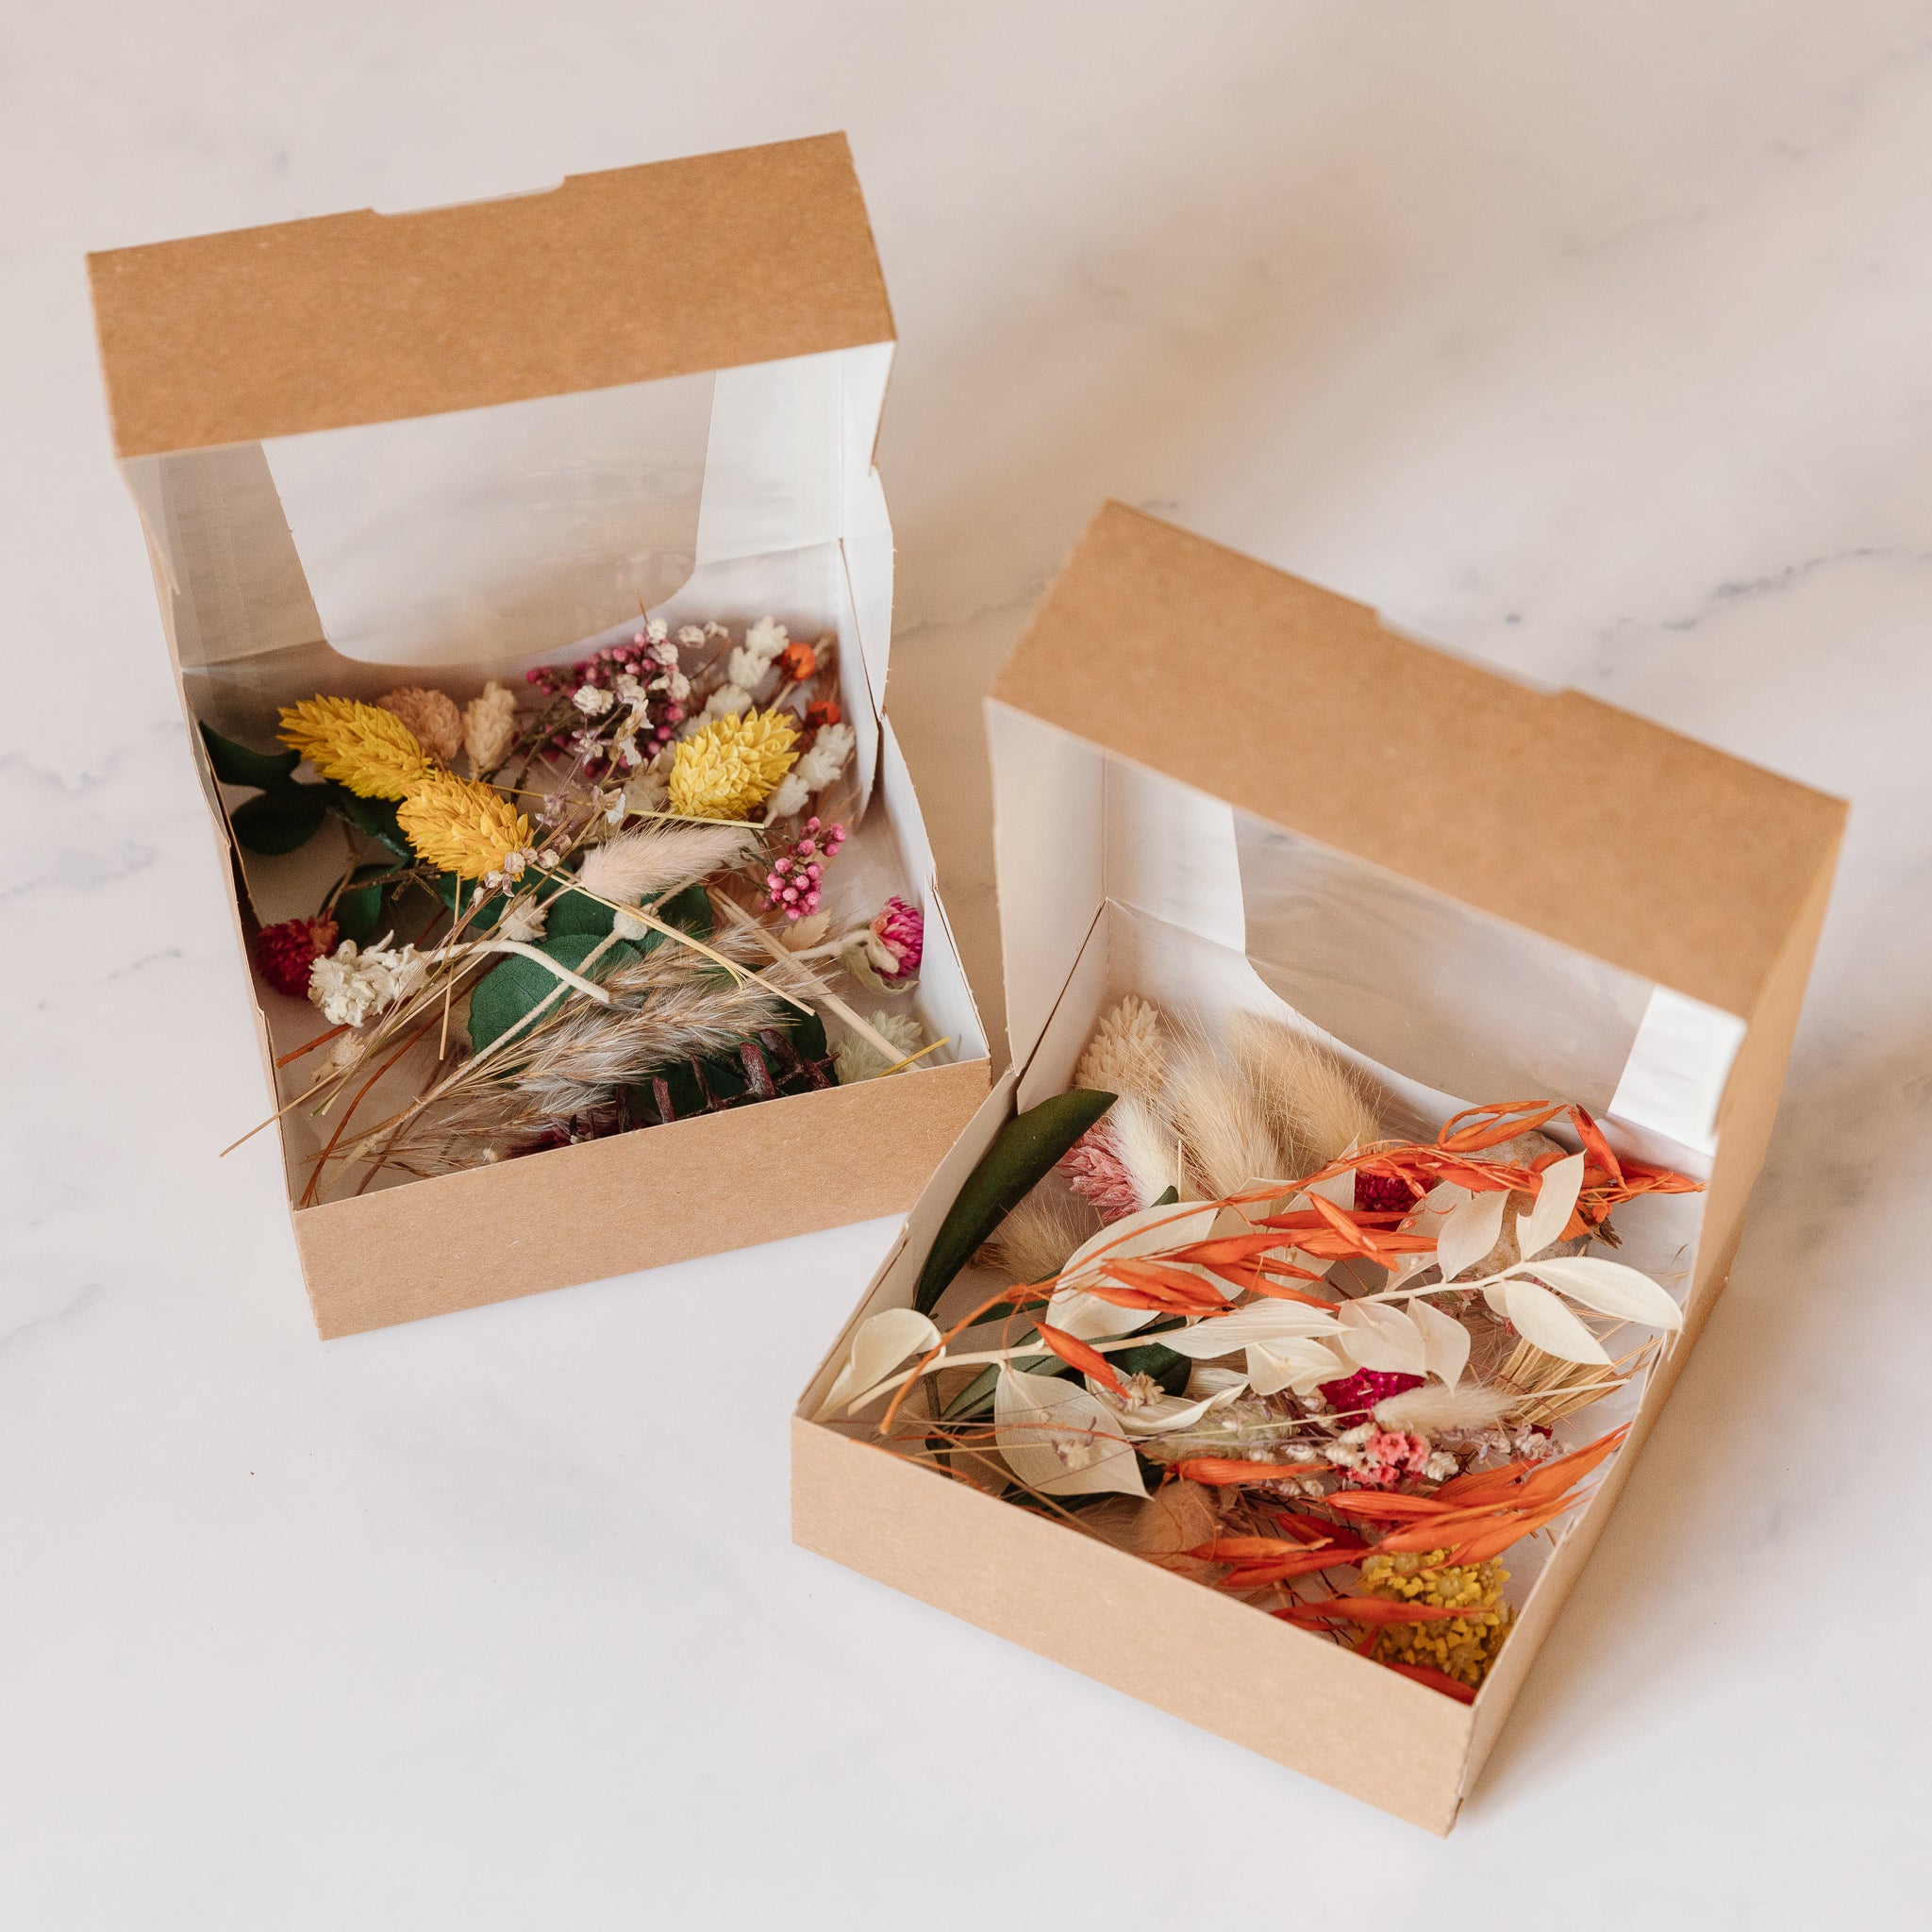 Trockenblumen Mix Box für DIY Projekte wie Karten, Sträußen und mehr